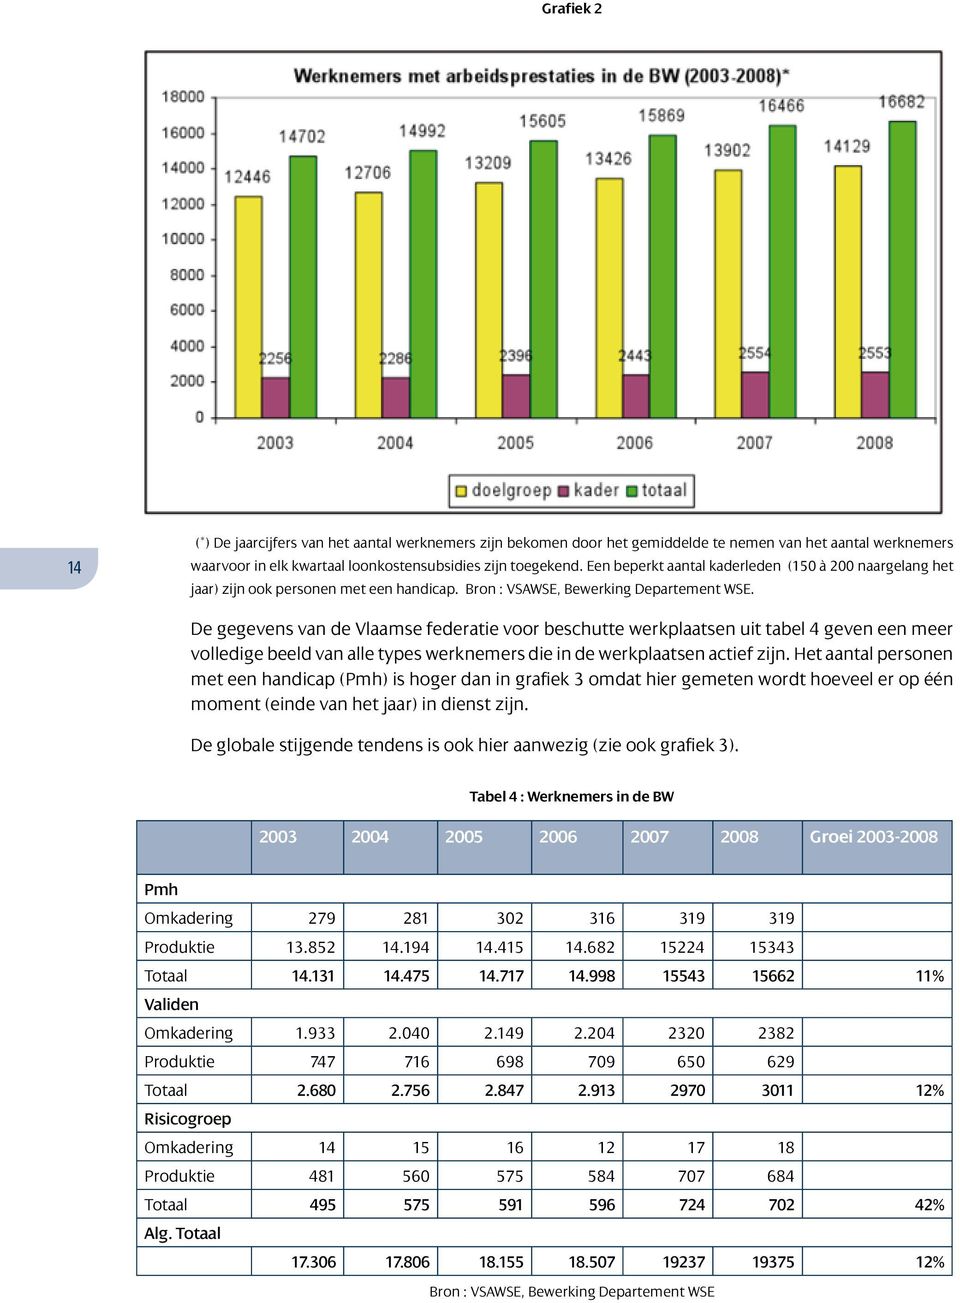 De gegevens van de Vlaamse federatie voor beschutte werkplaatsen uit tabel 4 geven een meer volledige beeld van alle types werknemers die in de werkplaatsen actief zijn.